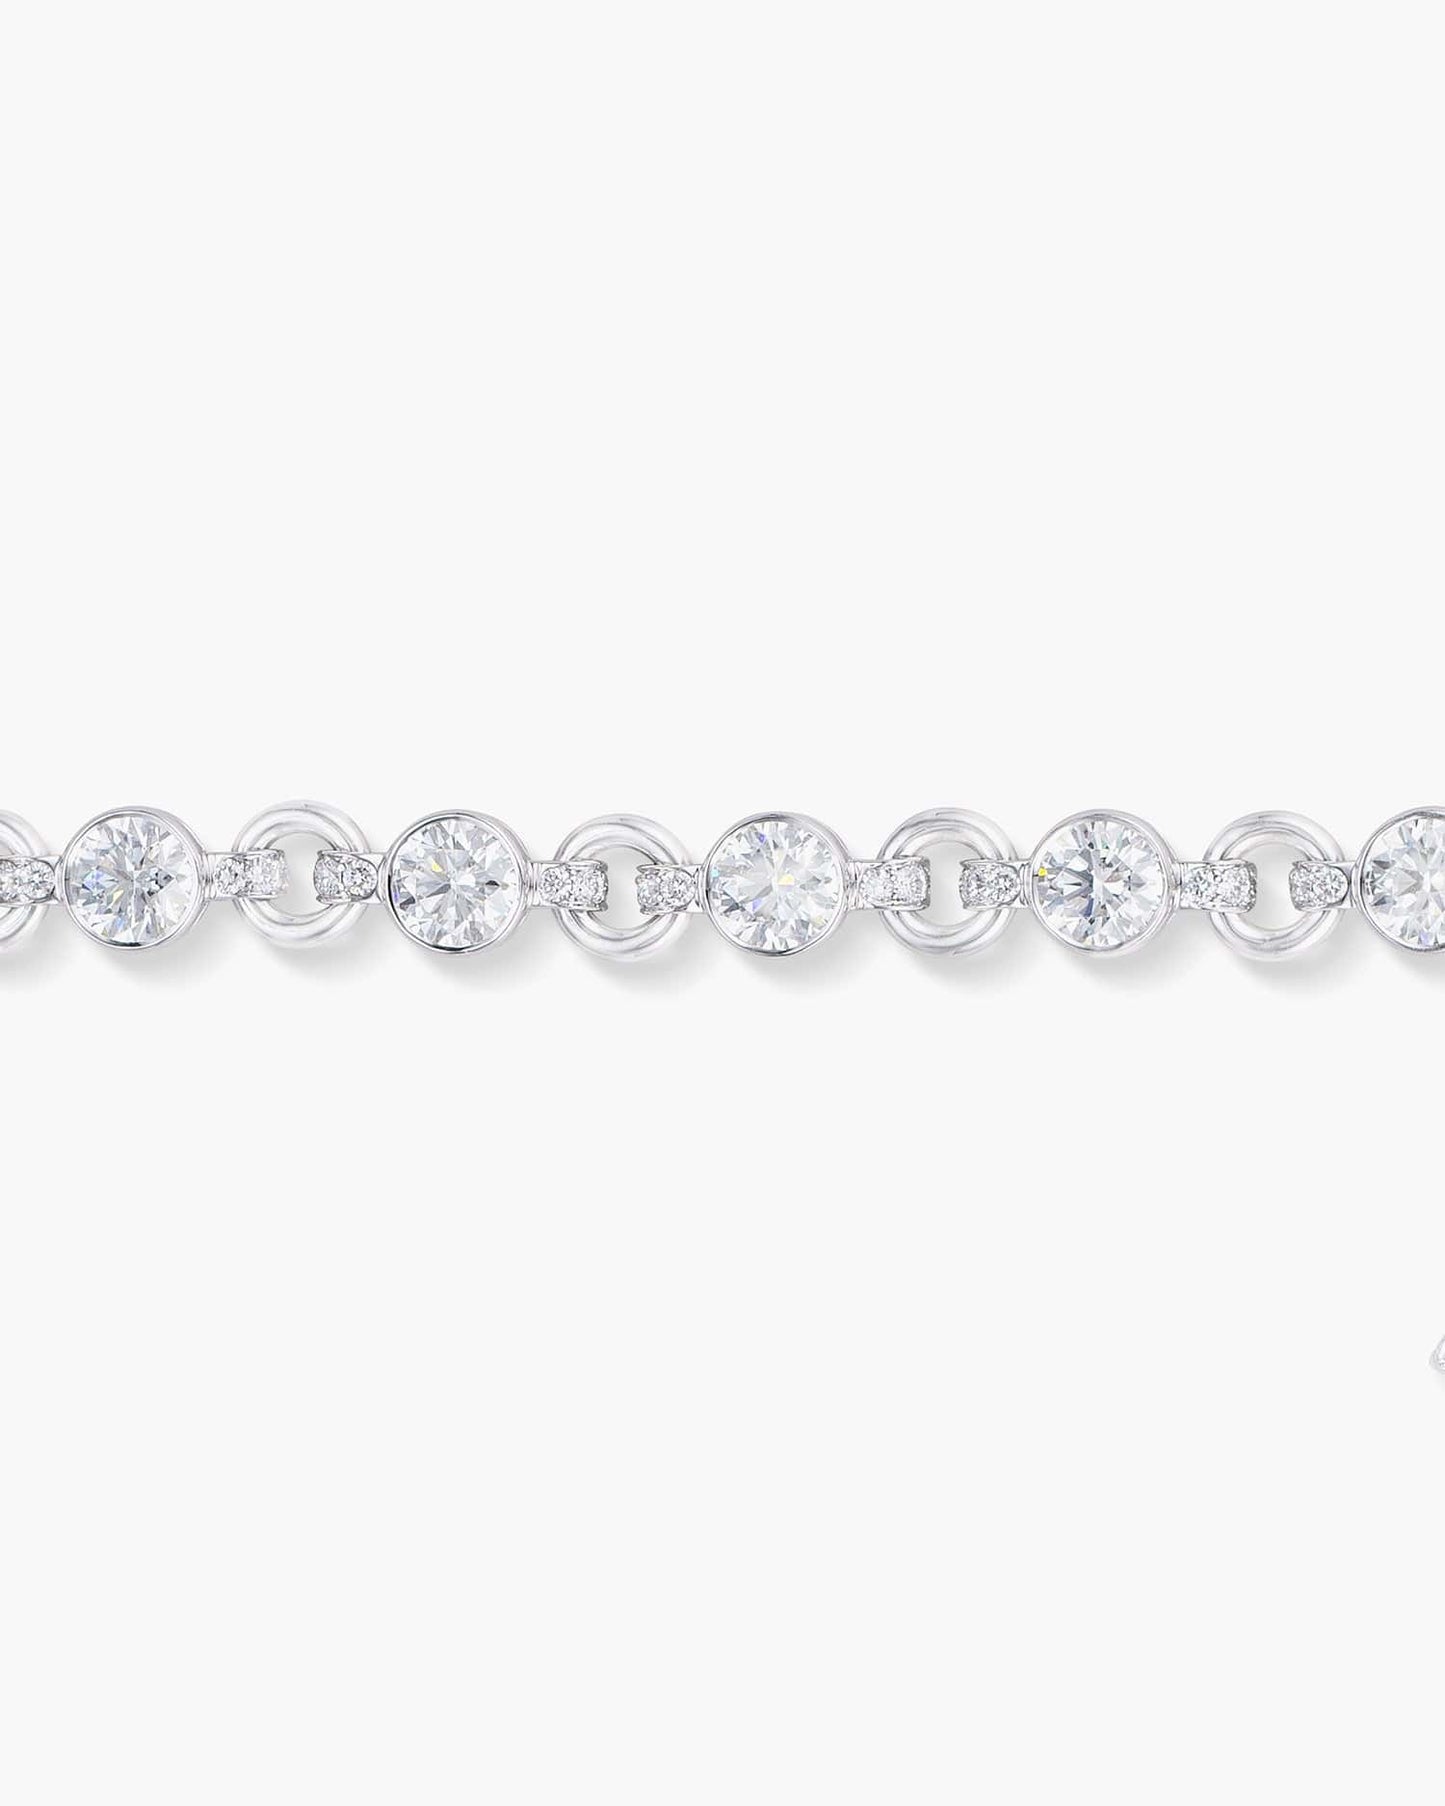 Diamond Charm Bracelet with Hamsa Charm